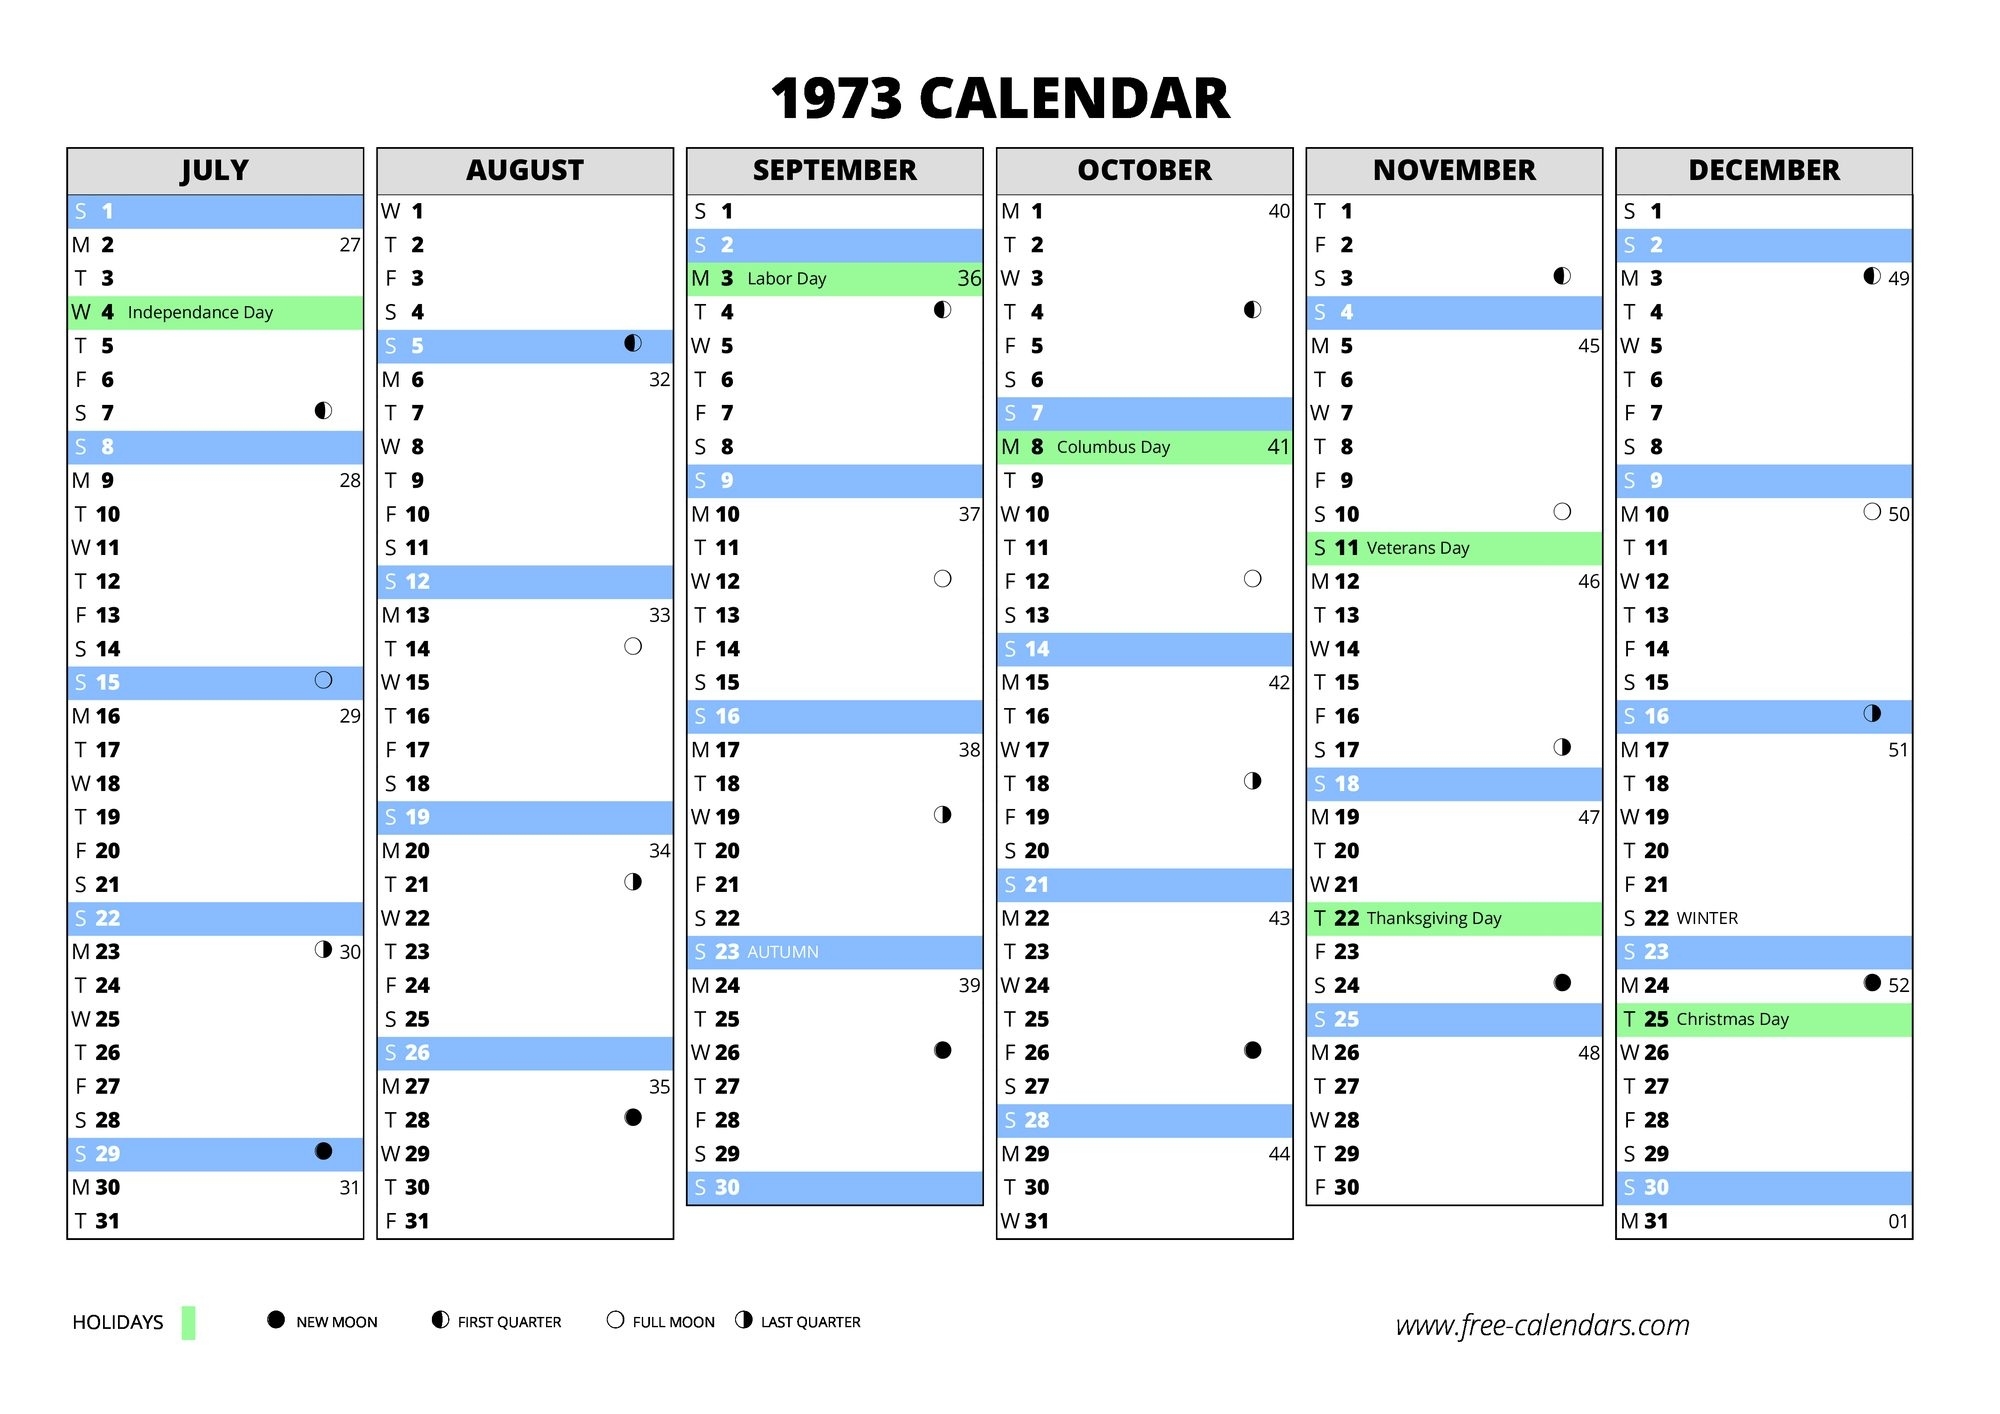 1973 Calendar ≡ Free-Calendars Calendar With Holidays 1973